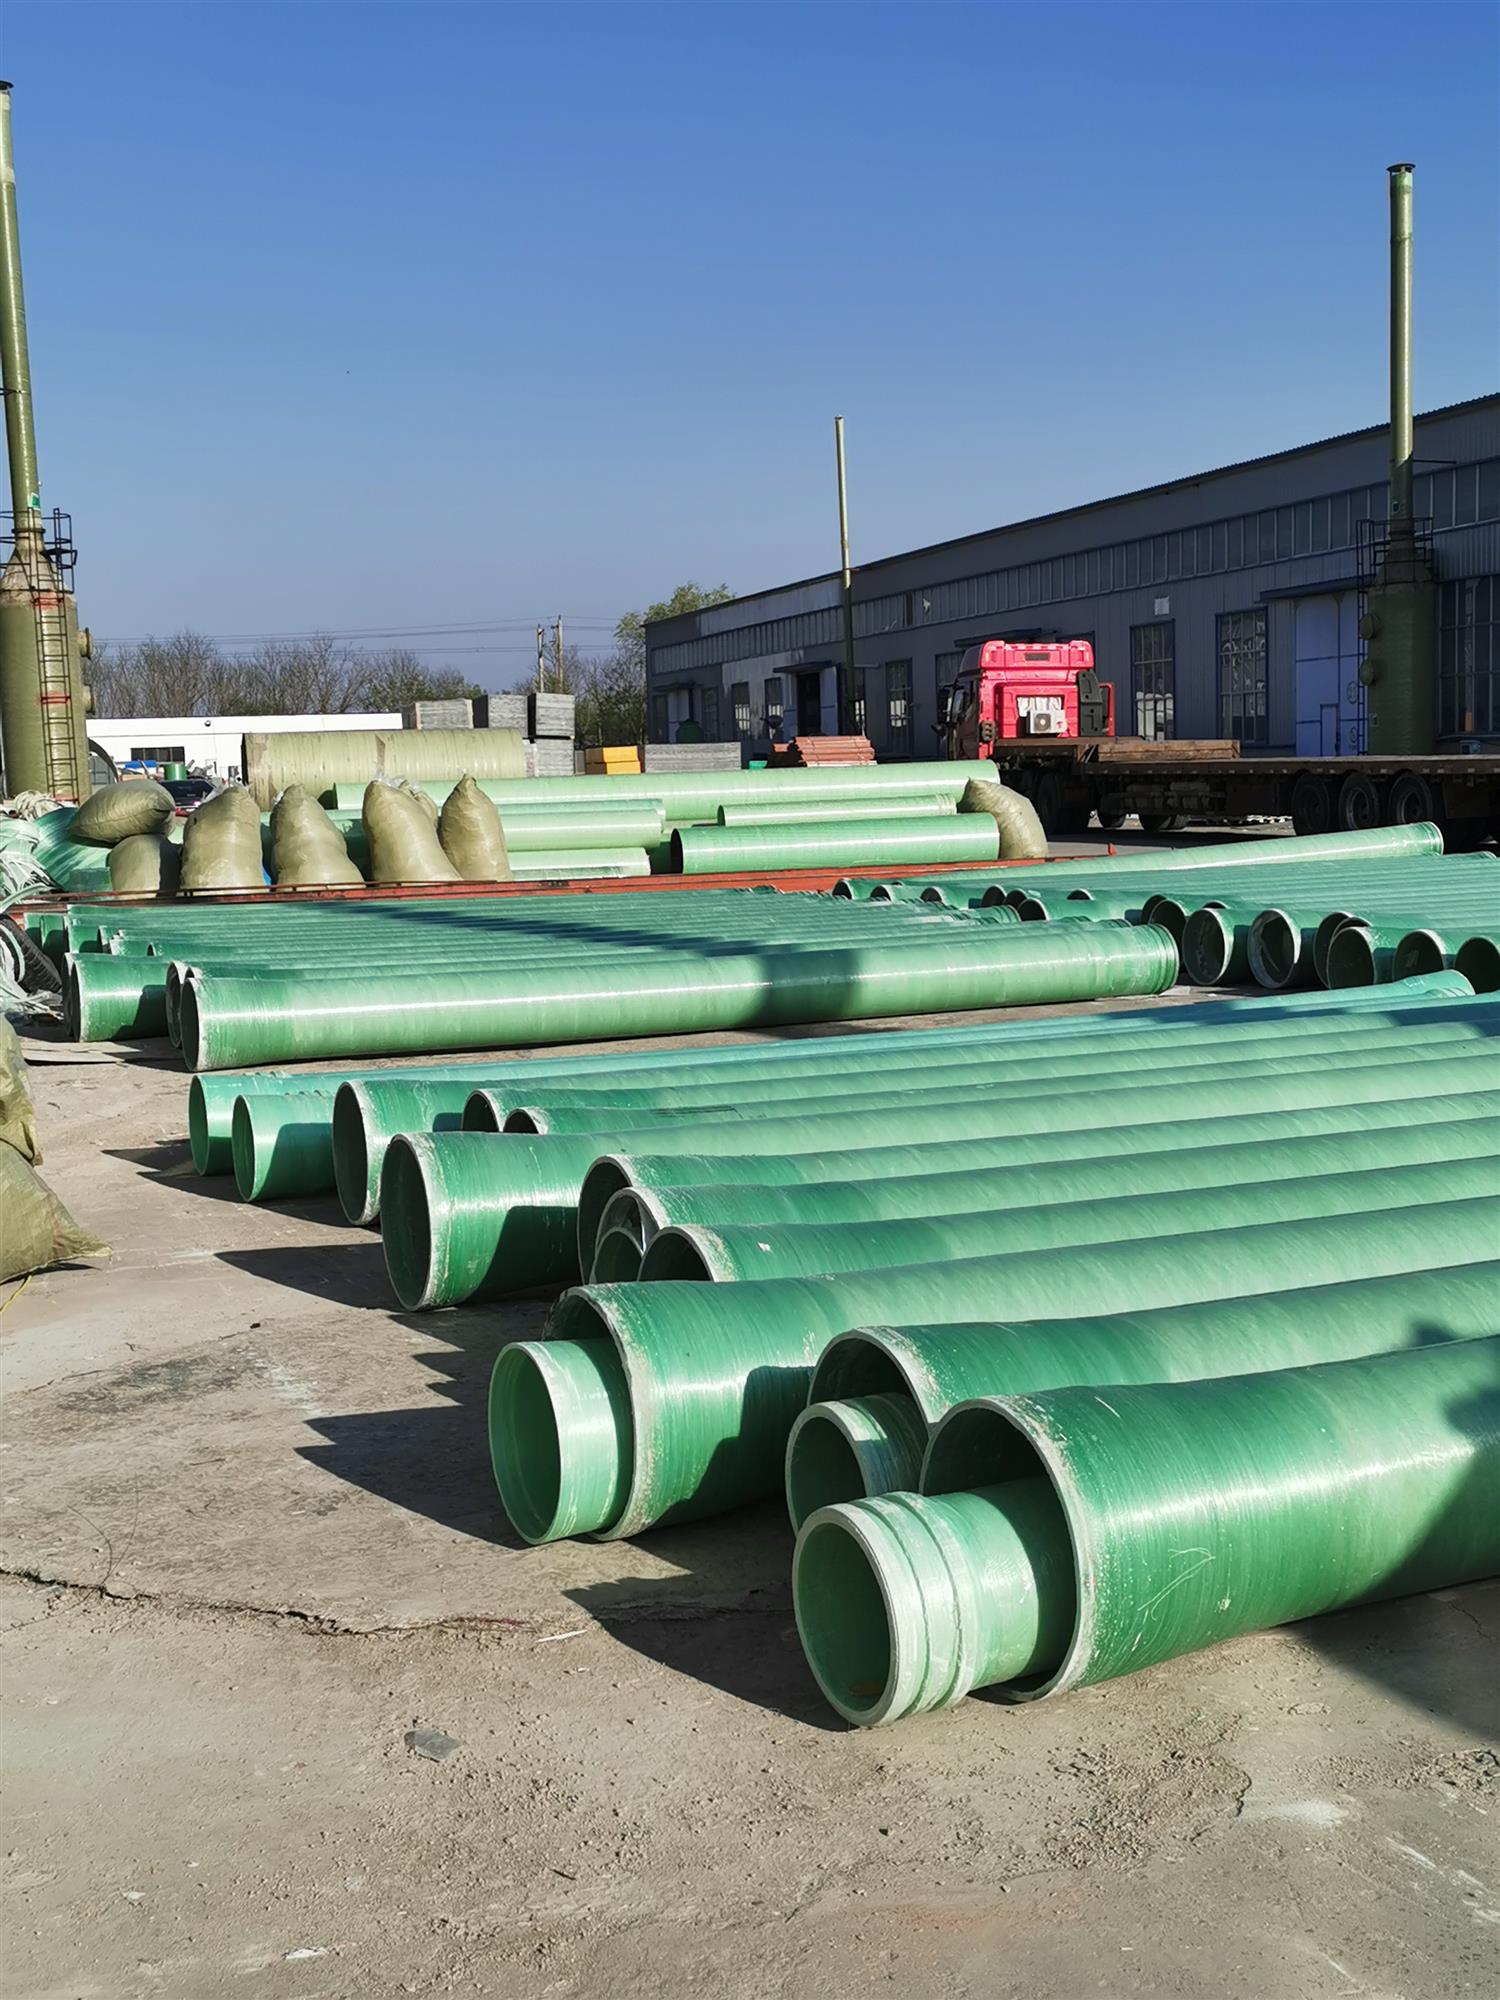 阿勒泰地区富蕴县玻璃钢管道采用树脂成型